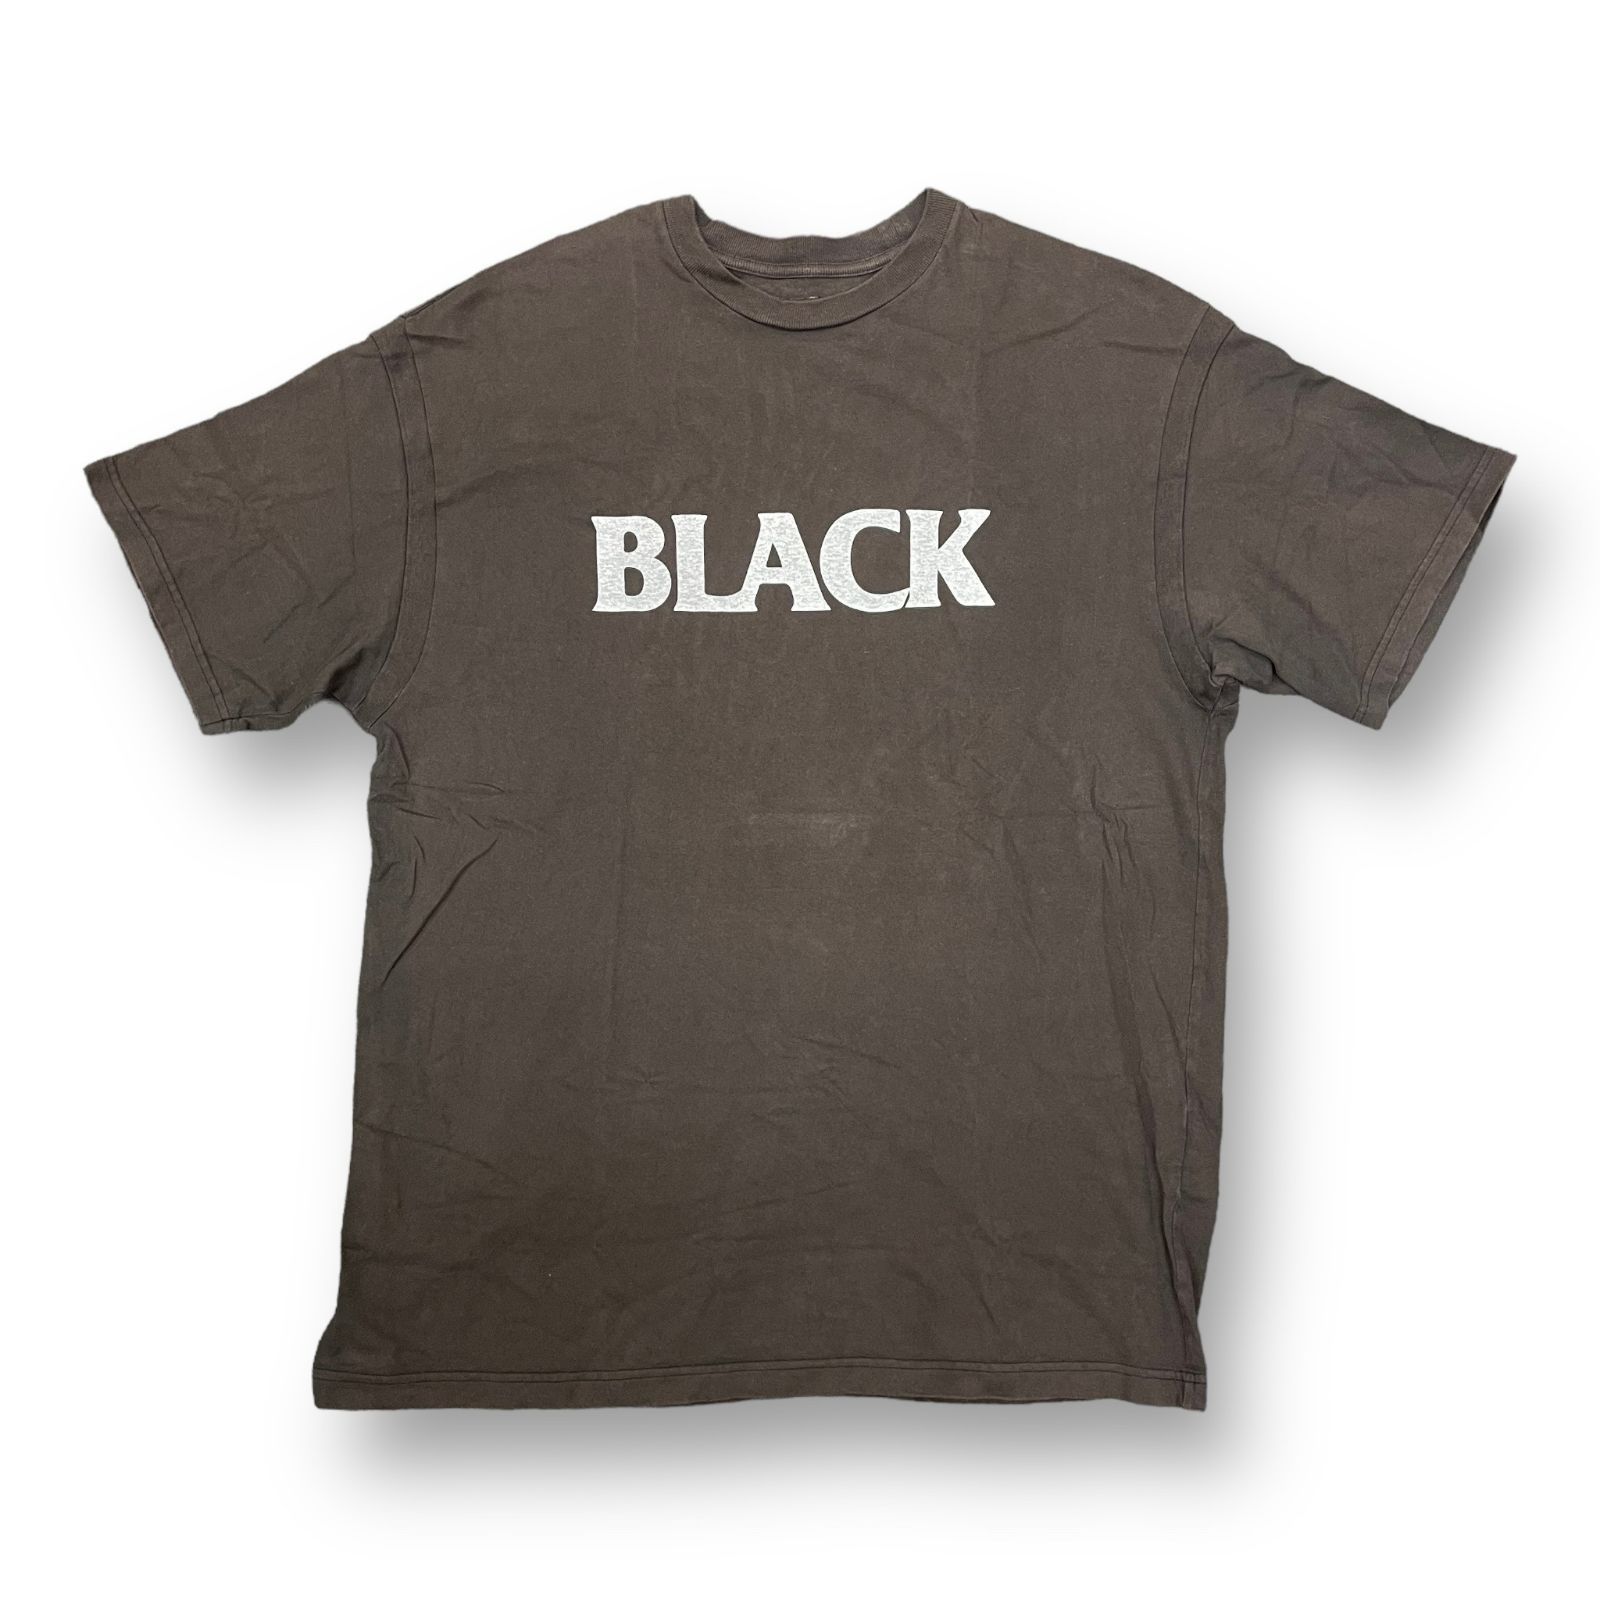 SEQUEL BLACK PRINT TEE ブラック プリント Tシャツ シークエル XL ...